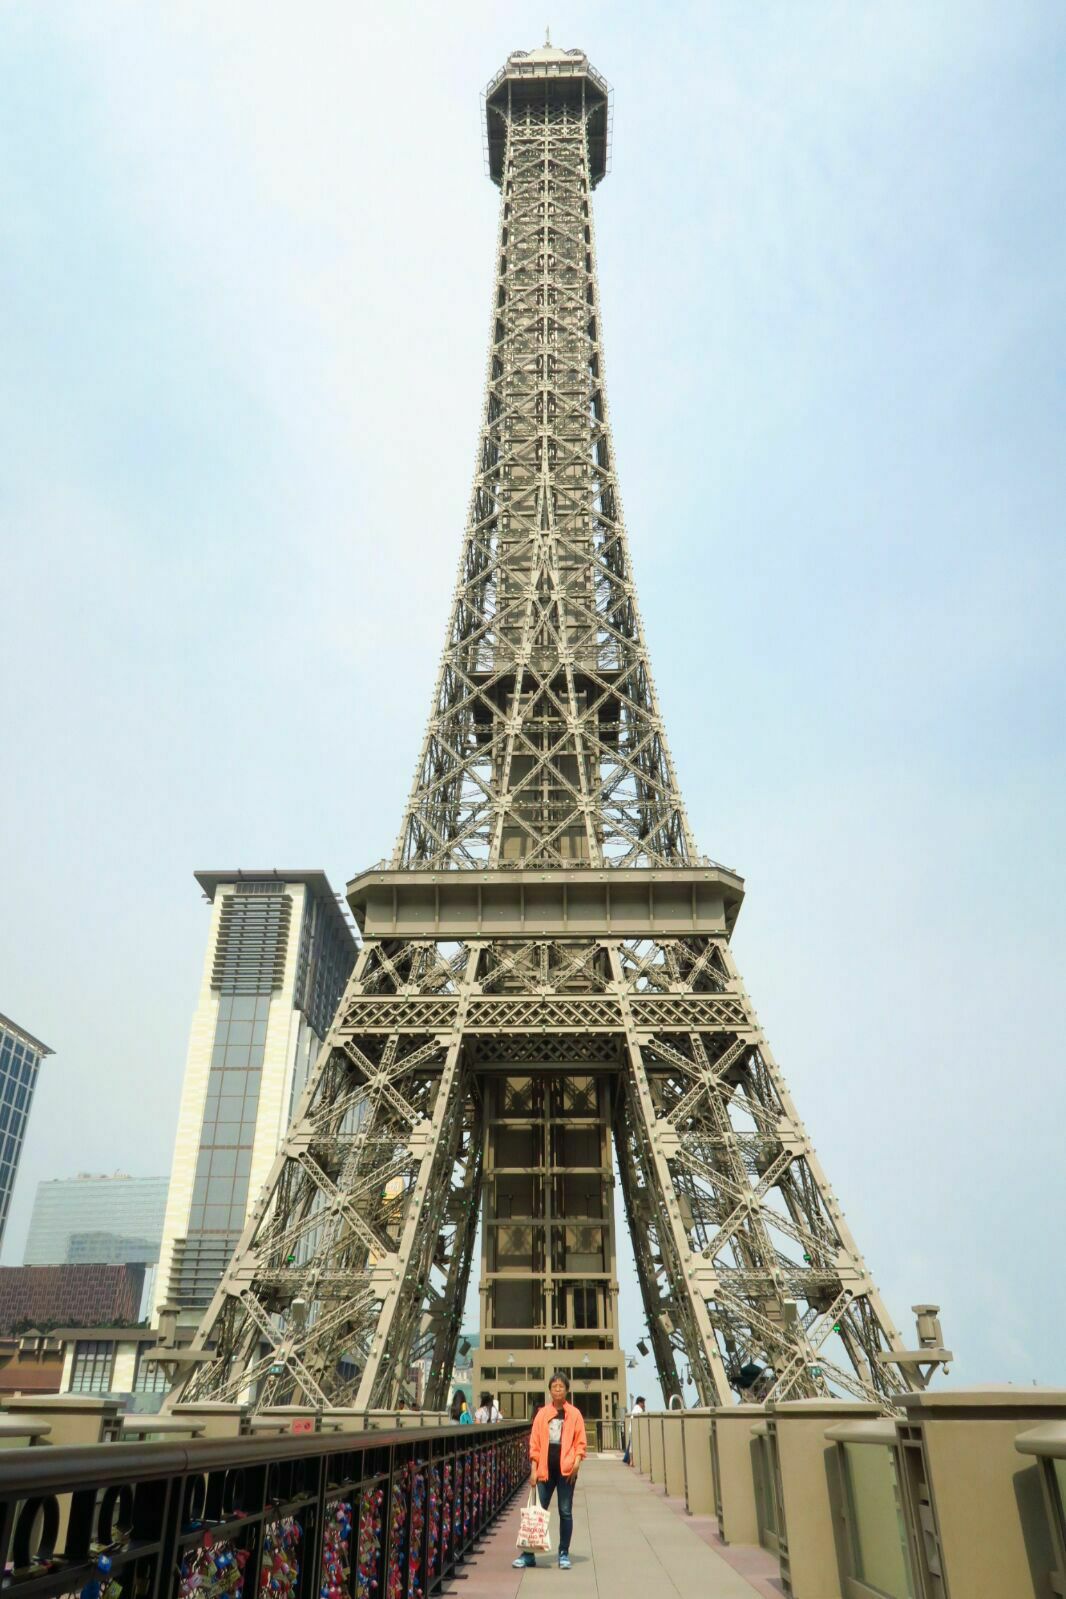 法国巴黎埃菲尔铁塔夜景壁纸